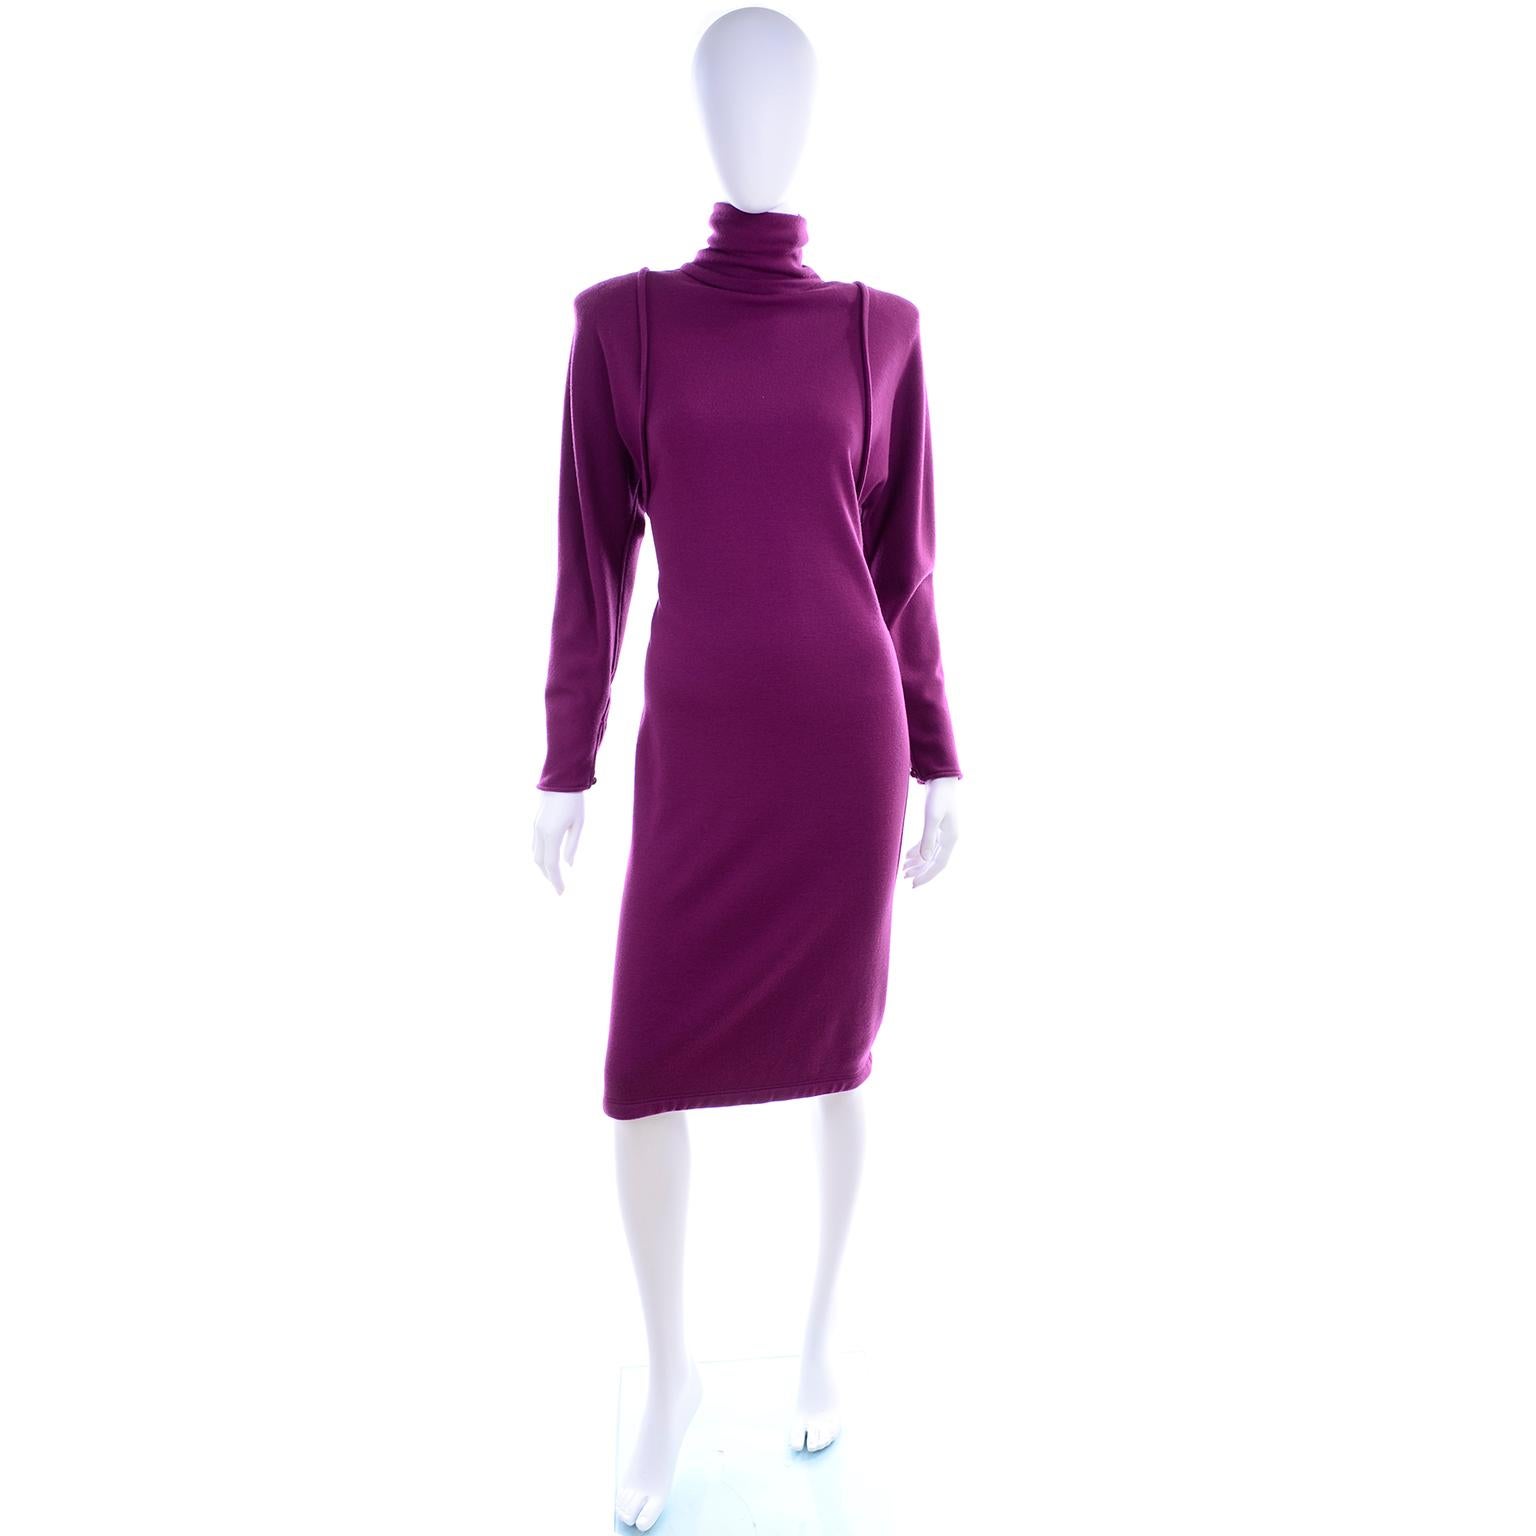 Women's 1980s Deadstock Emanuel Ungaro Purple Vintage Dress New W/ Tags